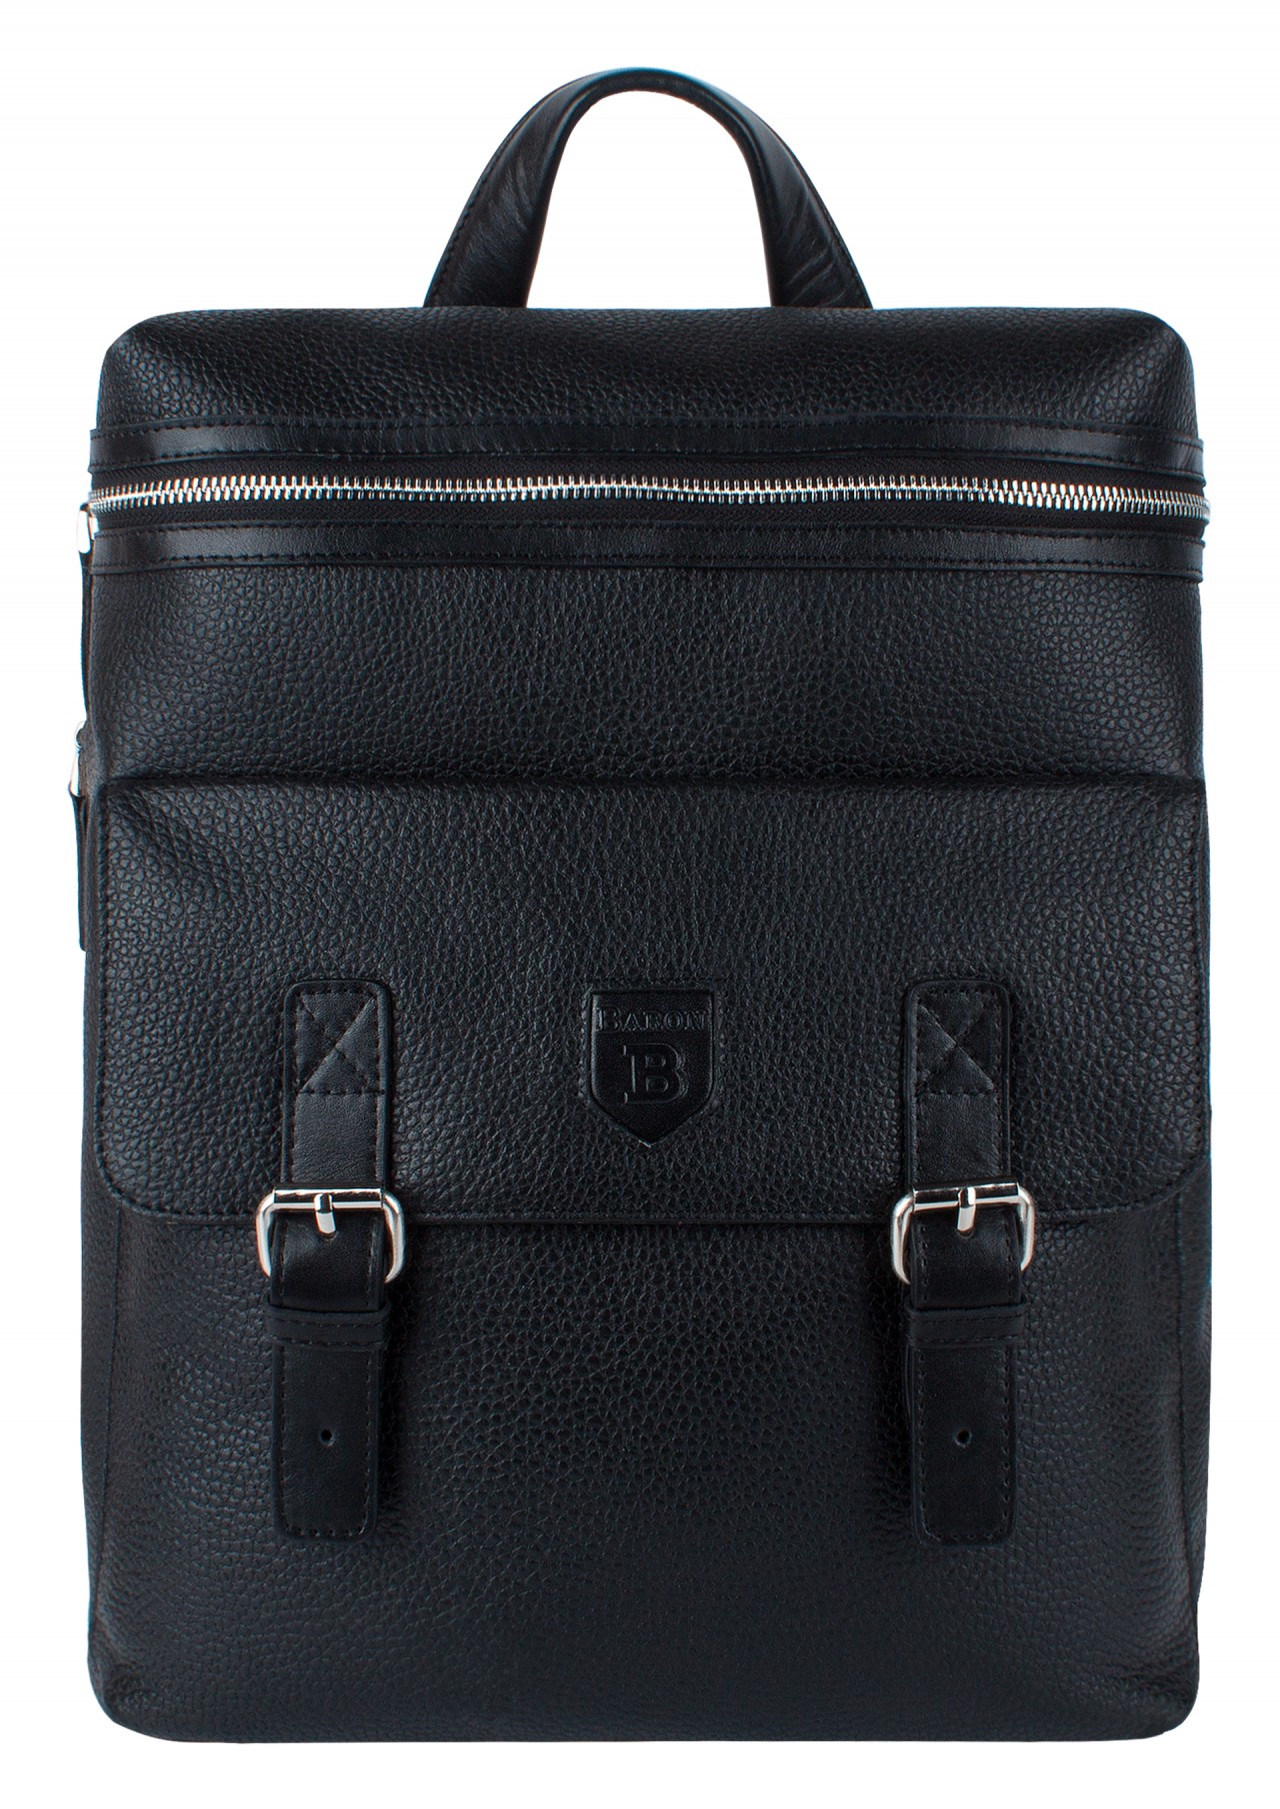 Рюкзак мужской 2-969кВ черный, 36х30х12 см Baron. Цвет: черный